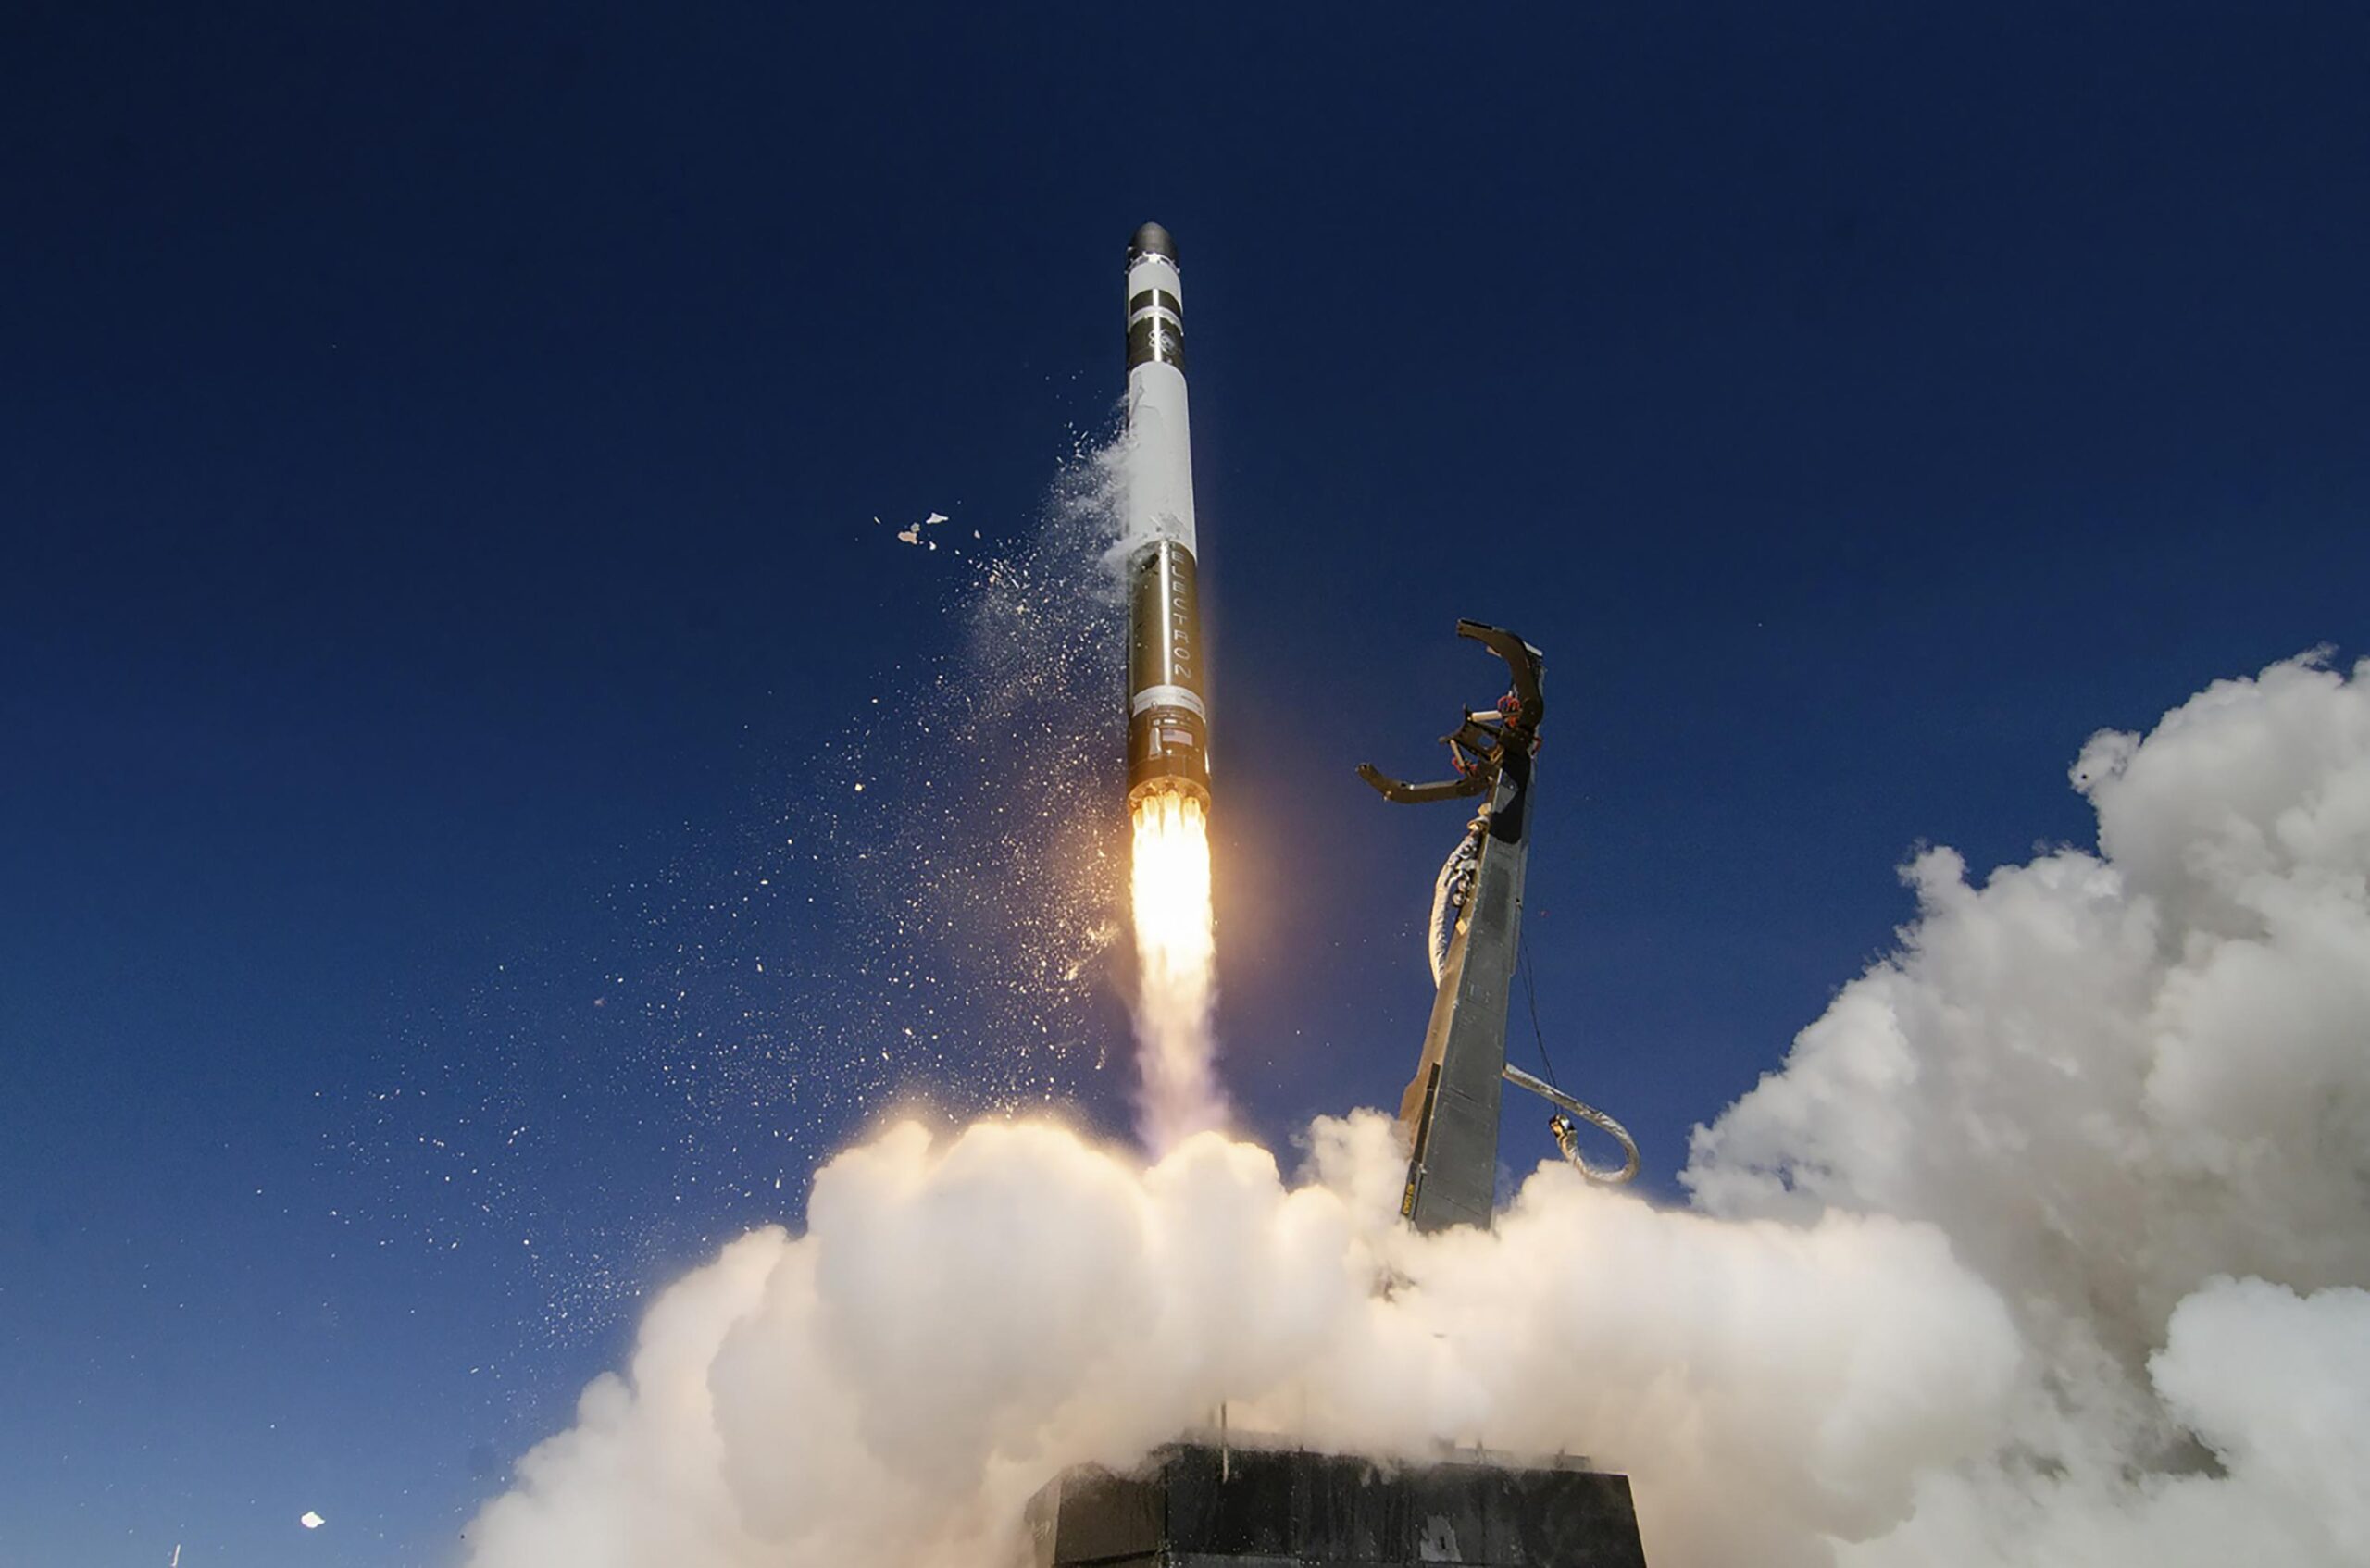 न्यूजीलैंड का वाणिज्यिक रॉकेट उद्योग रफ्तार पर, राष्ट्रीय अंतरिक्ष कानून को बढ़ावा देने की जरूरत